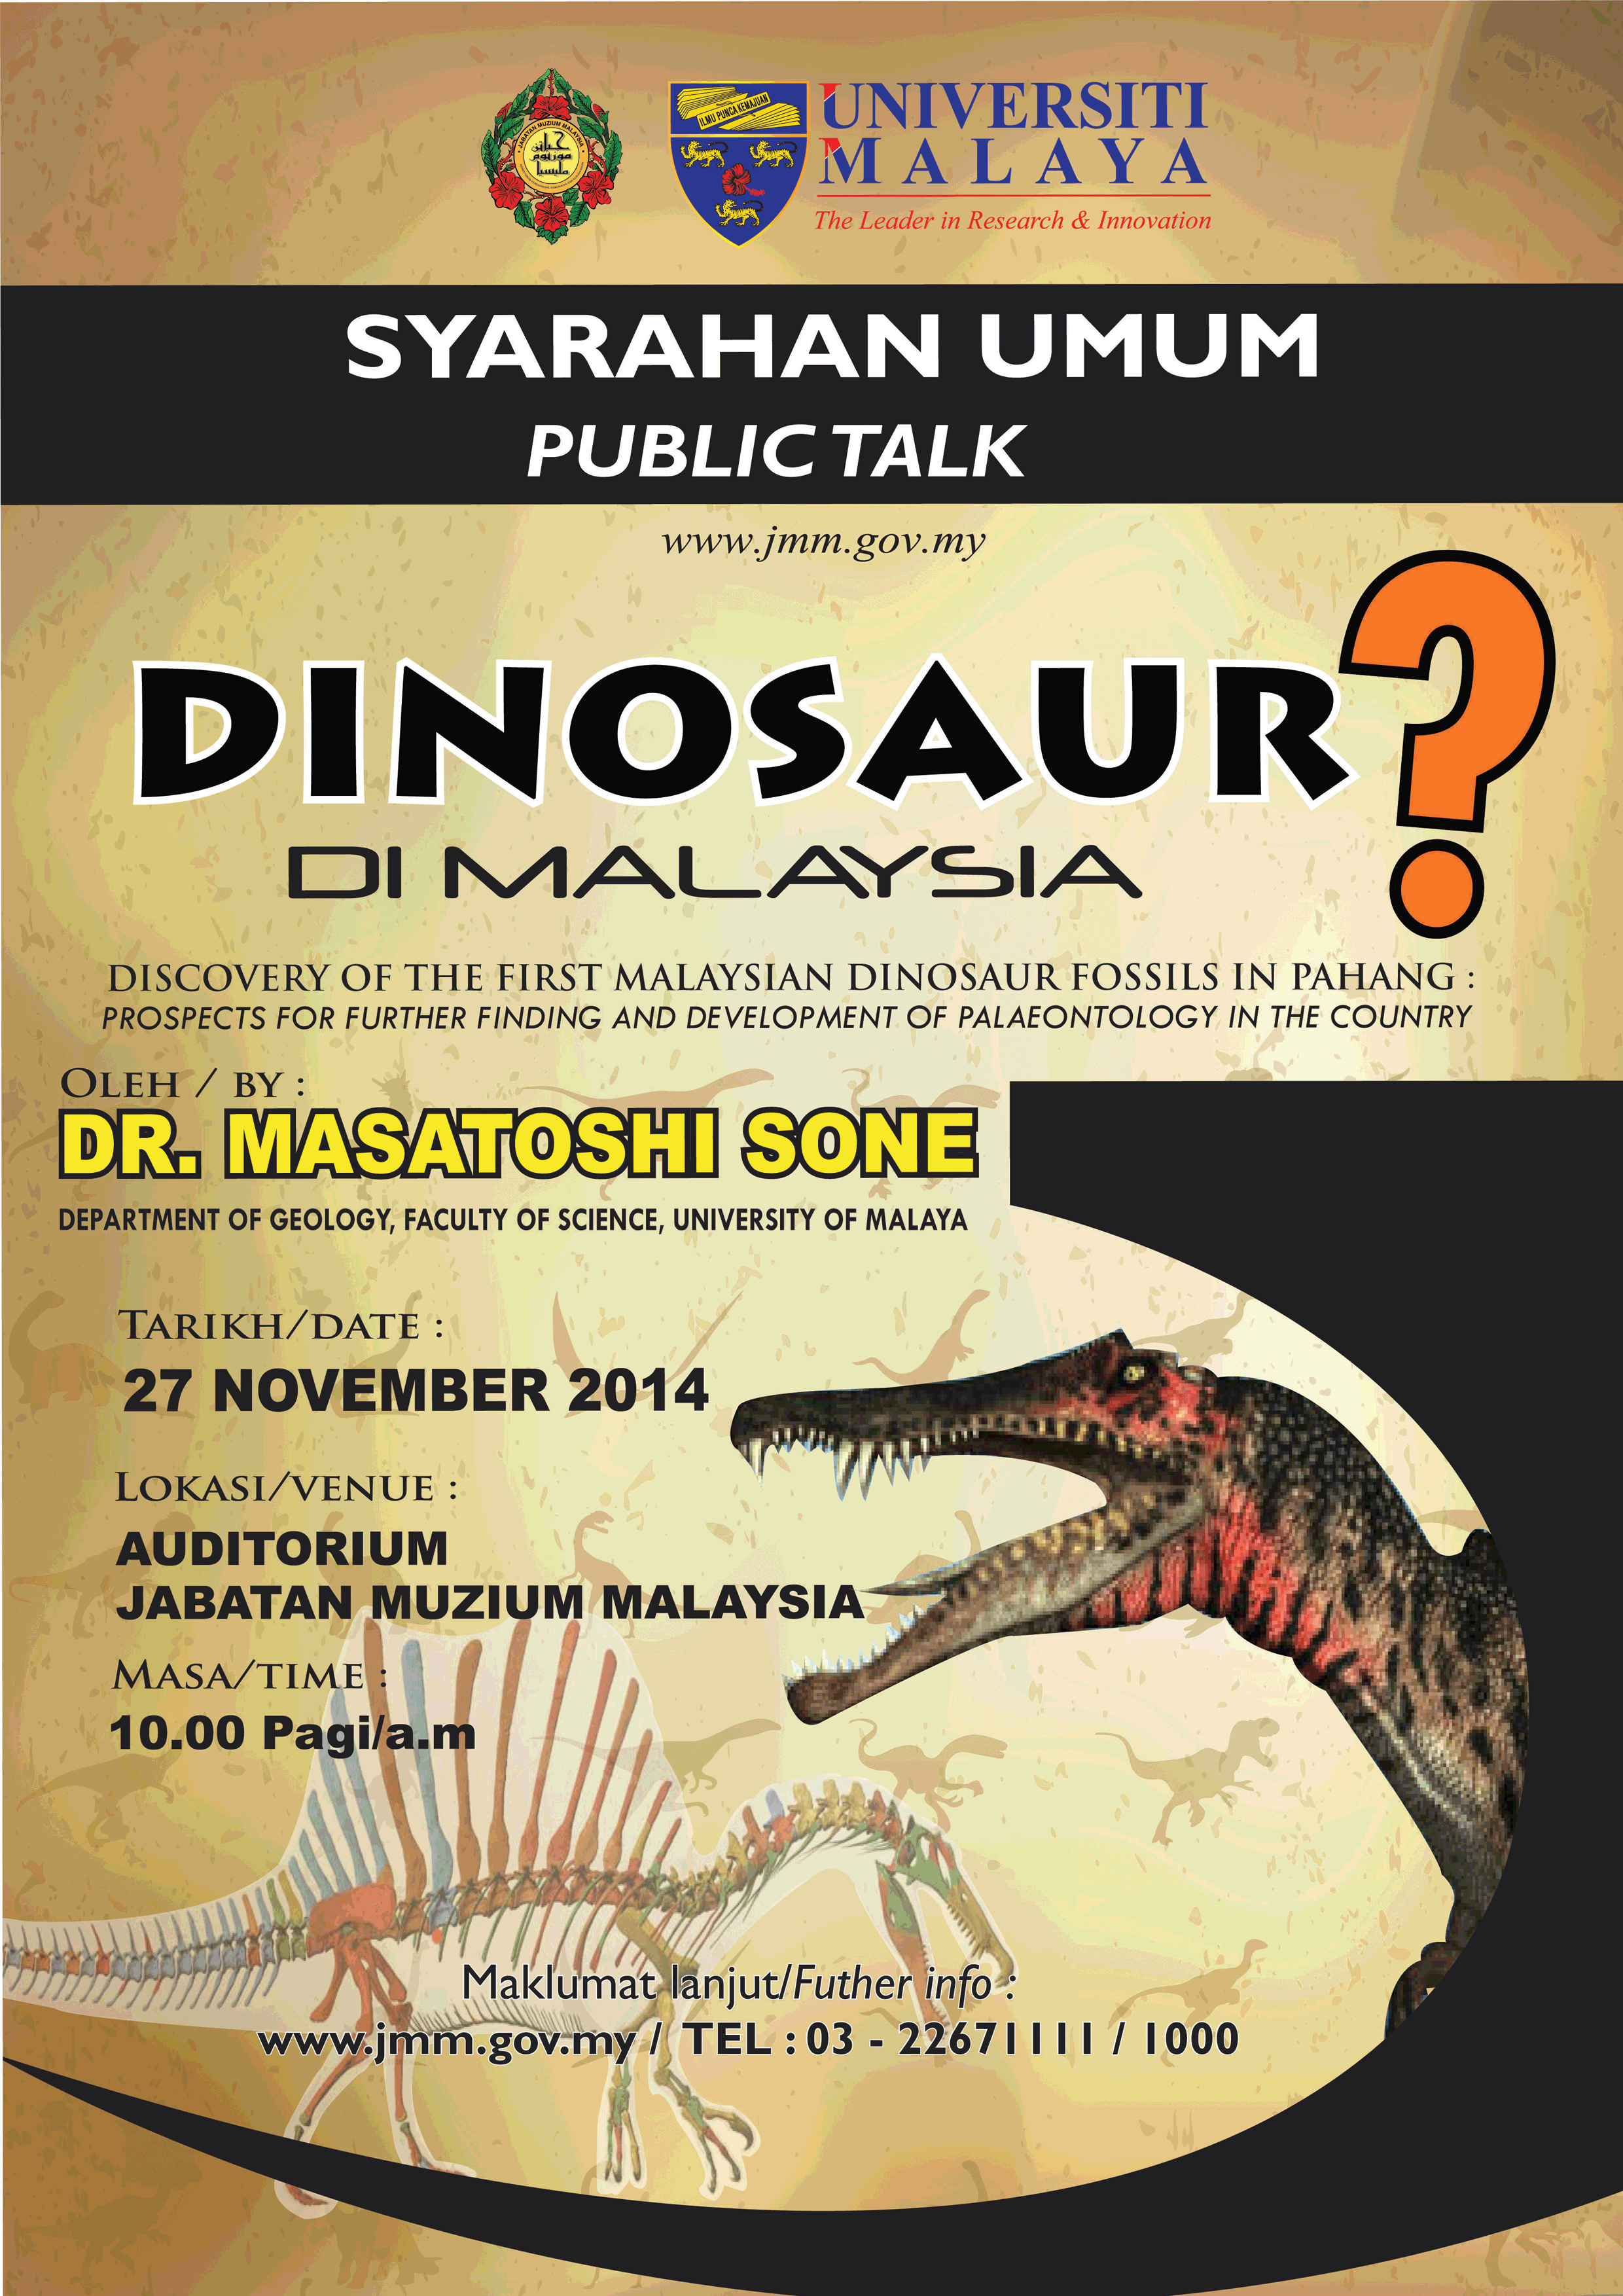 Syarahan Umum : Dinosaur Di Malaysia?